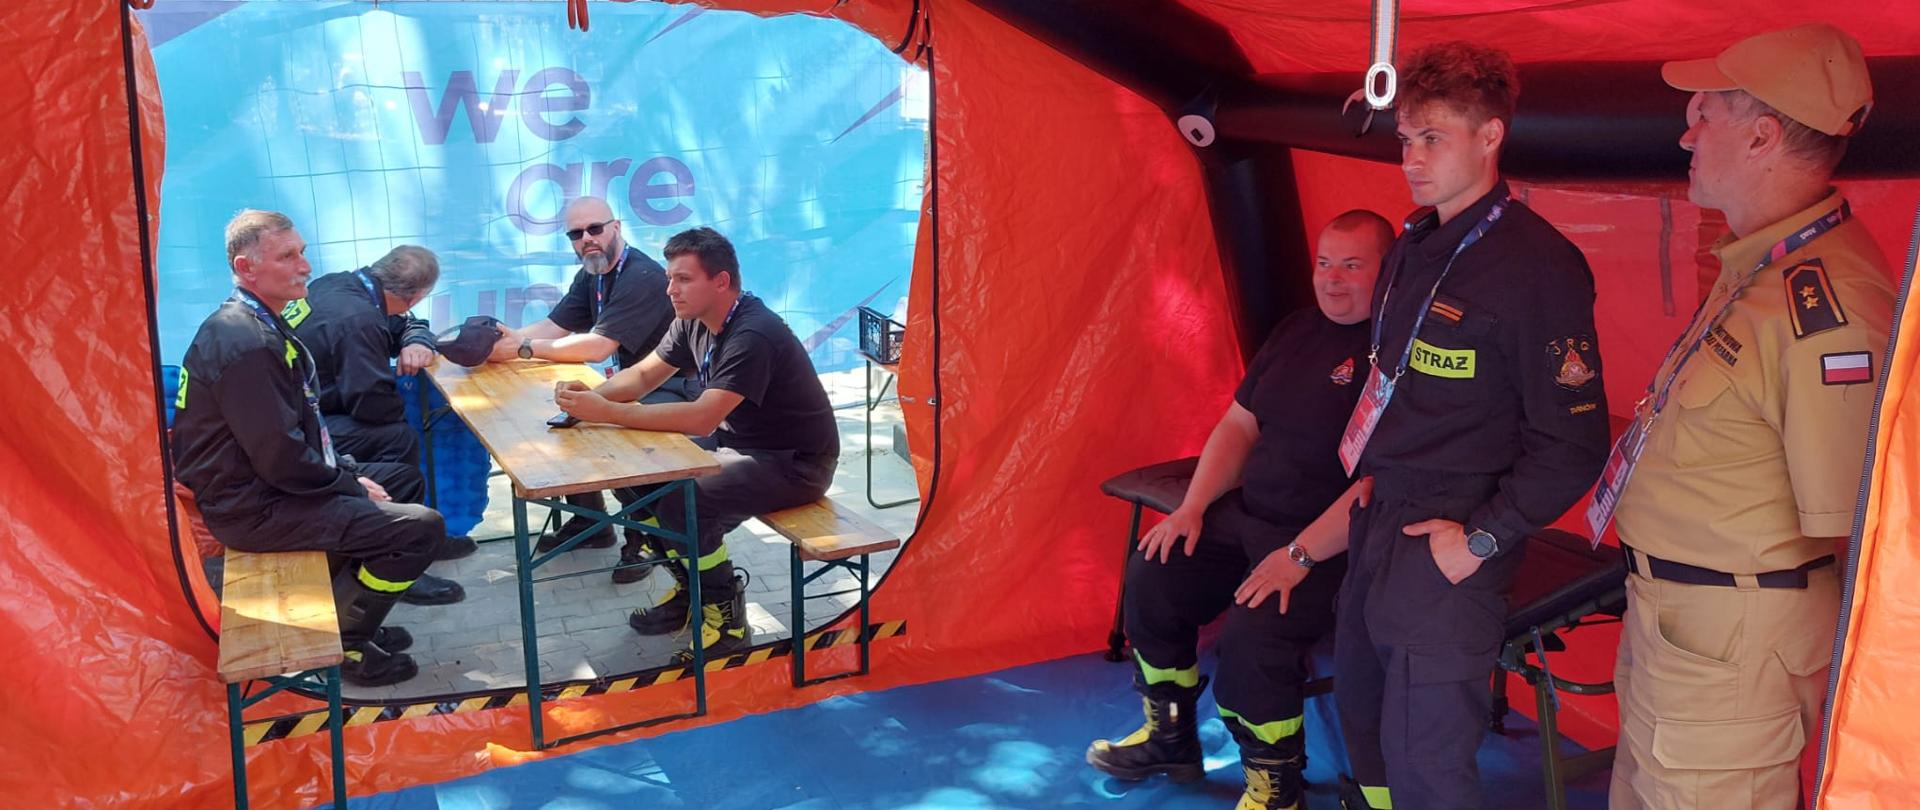 Zdjęcie przedstawia Sztab akcji zabezpieczenia III Igrzysk Europejskich. Strażacy znajdują się w pomarańczowym namiocie z niebieskim spodem.